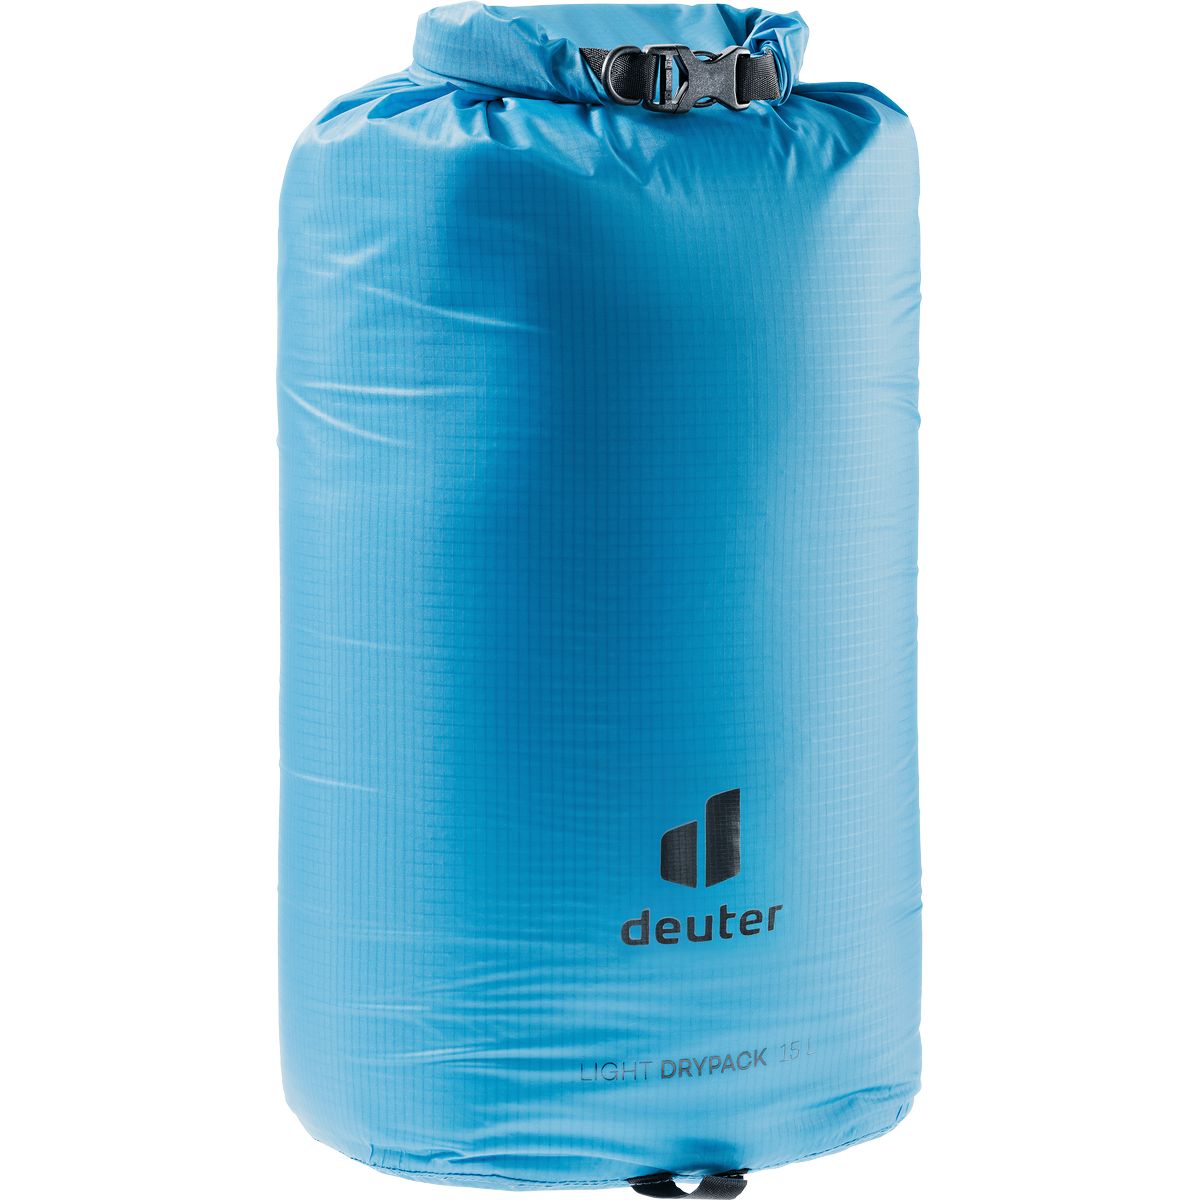 Deuter Light Drypack 15 Beutel / Kleintasche